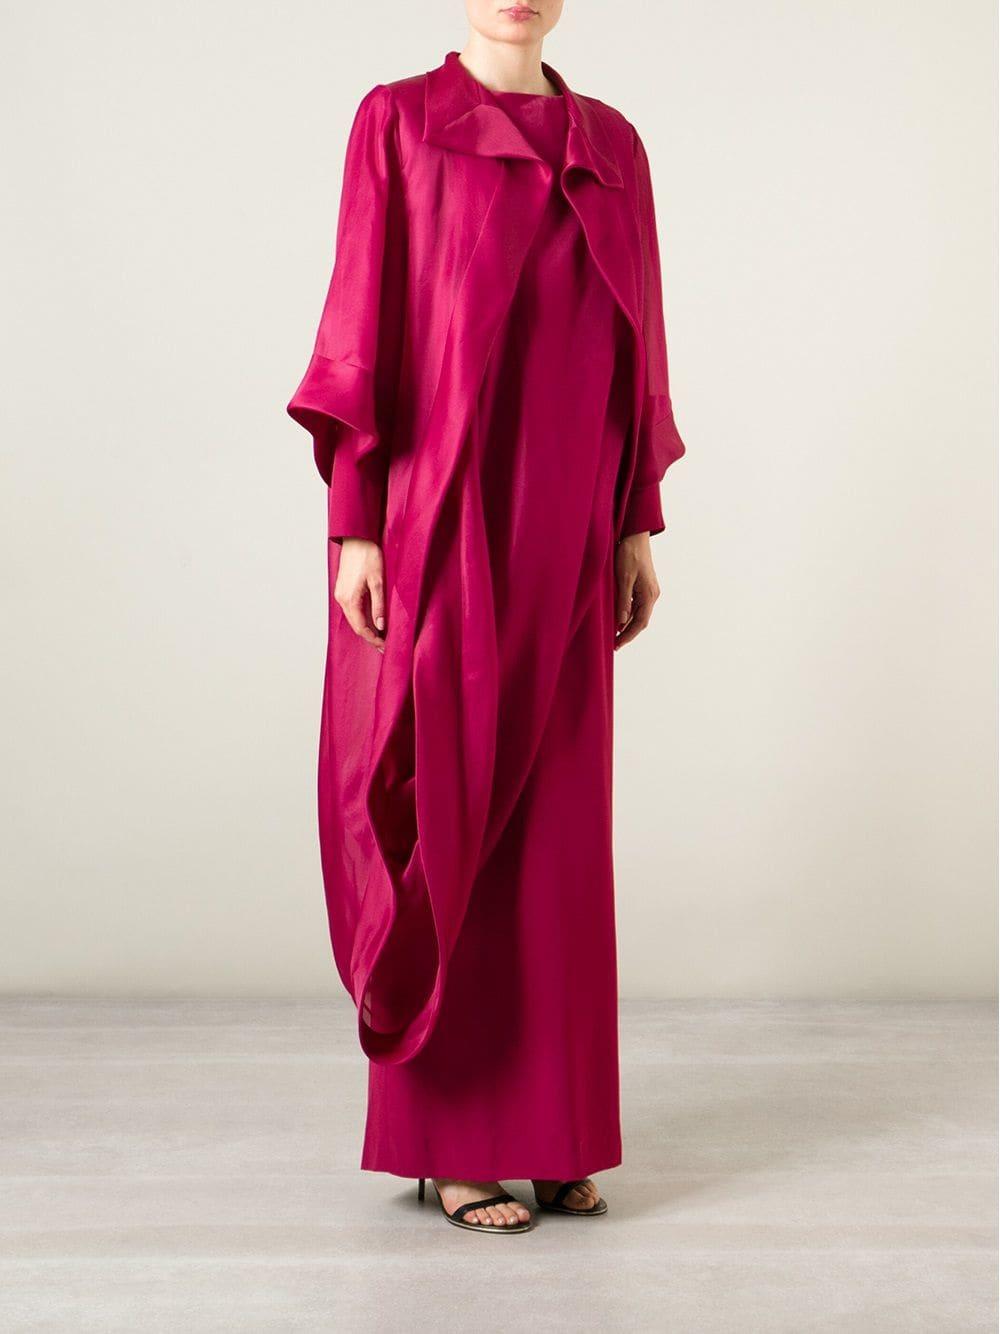 Women's 1990s Givenchy Fuchsia Chiffon Long Dress